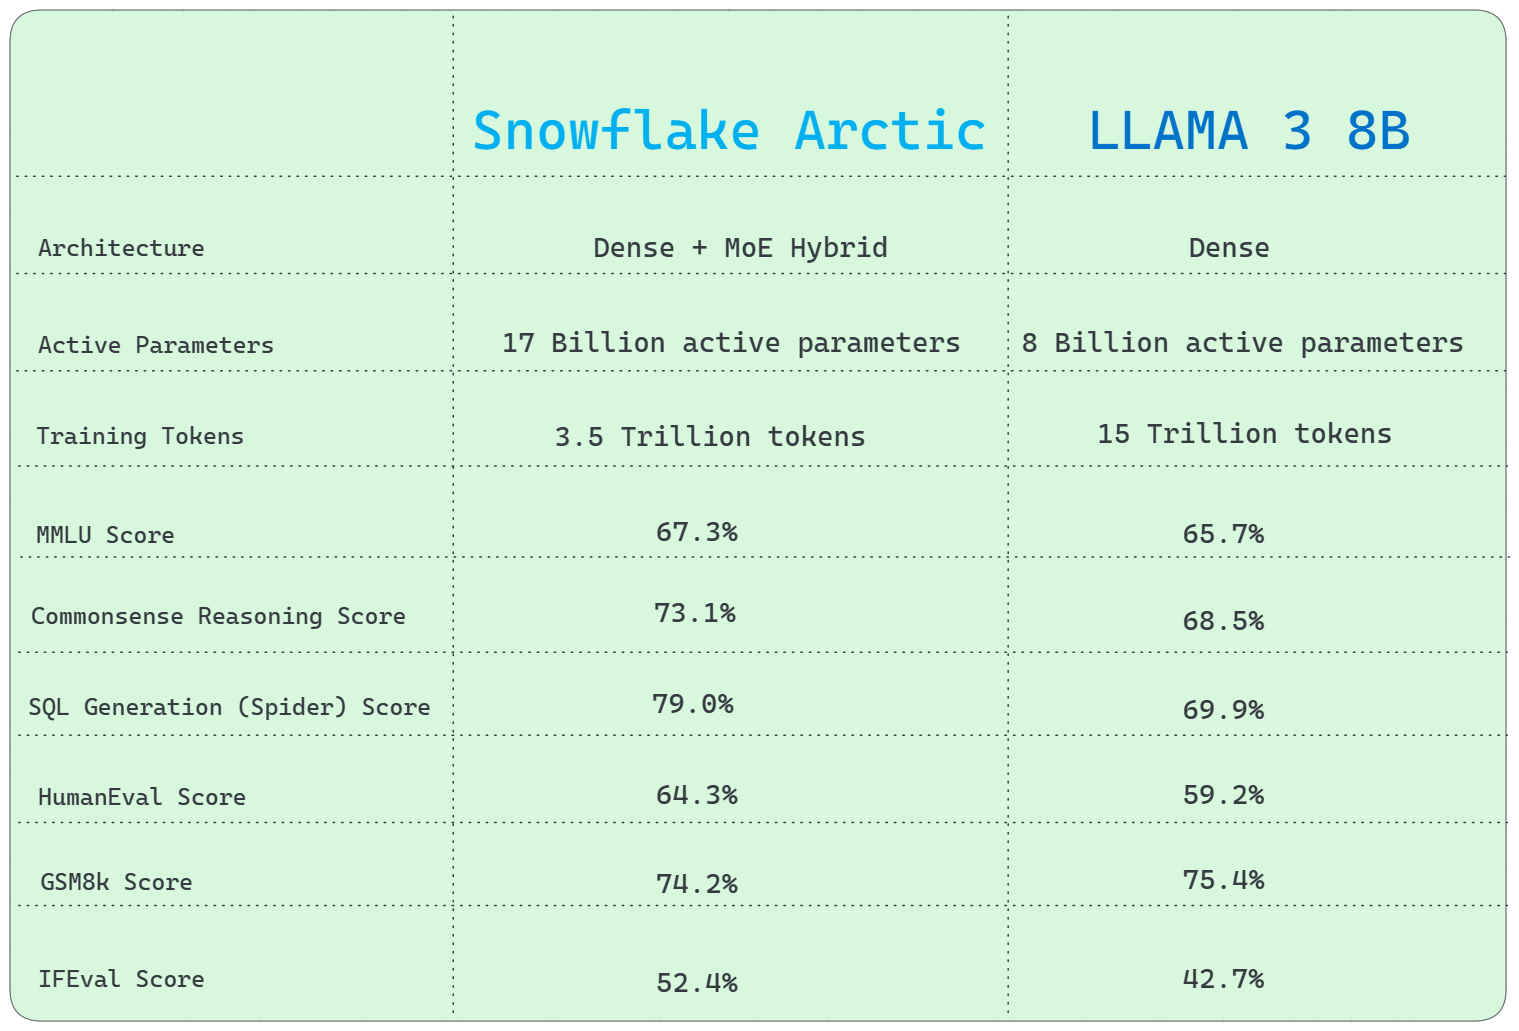 Snowflake Arctic vs. Llama 3 8B